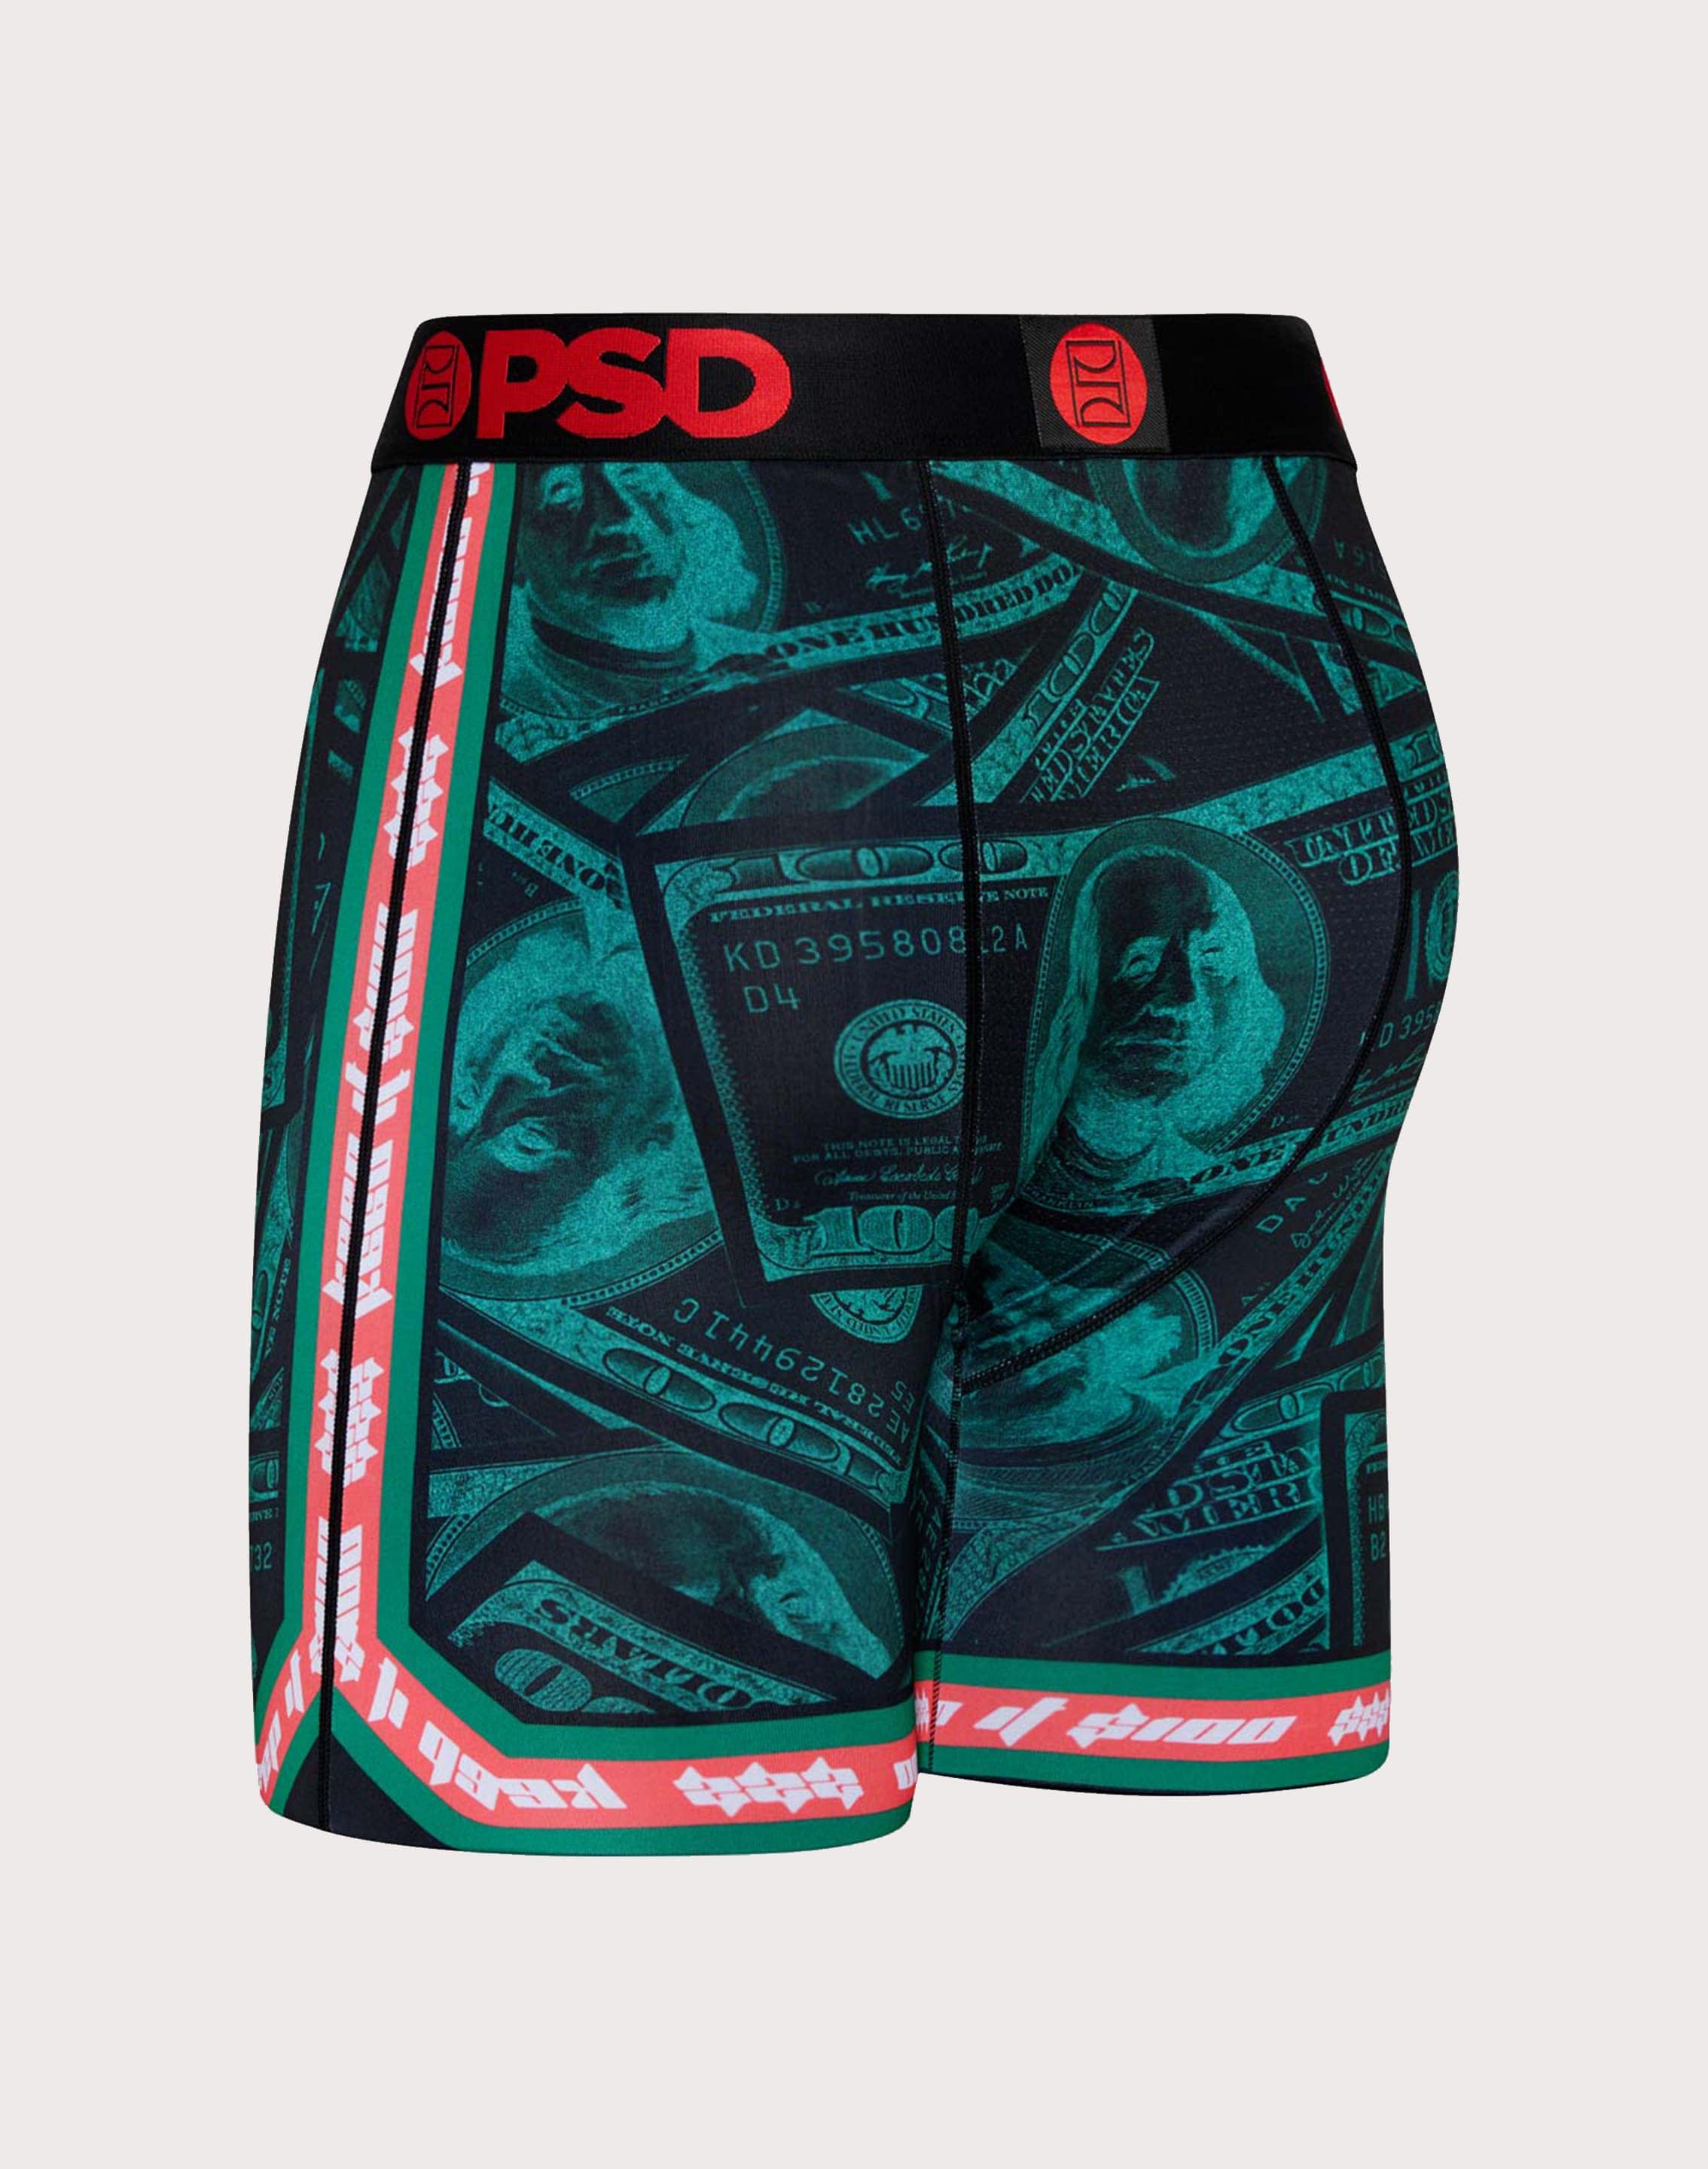 Psd Underwear Money Sport Boxer Briefs – DTLR